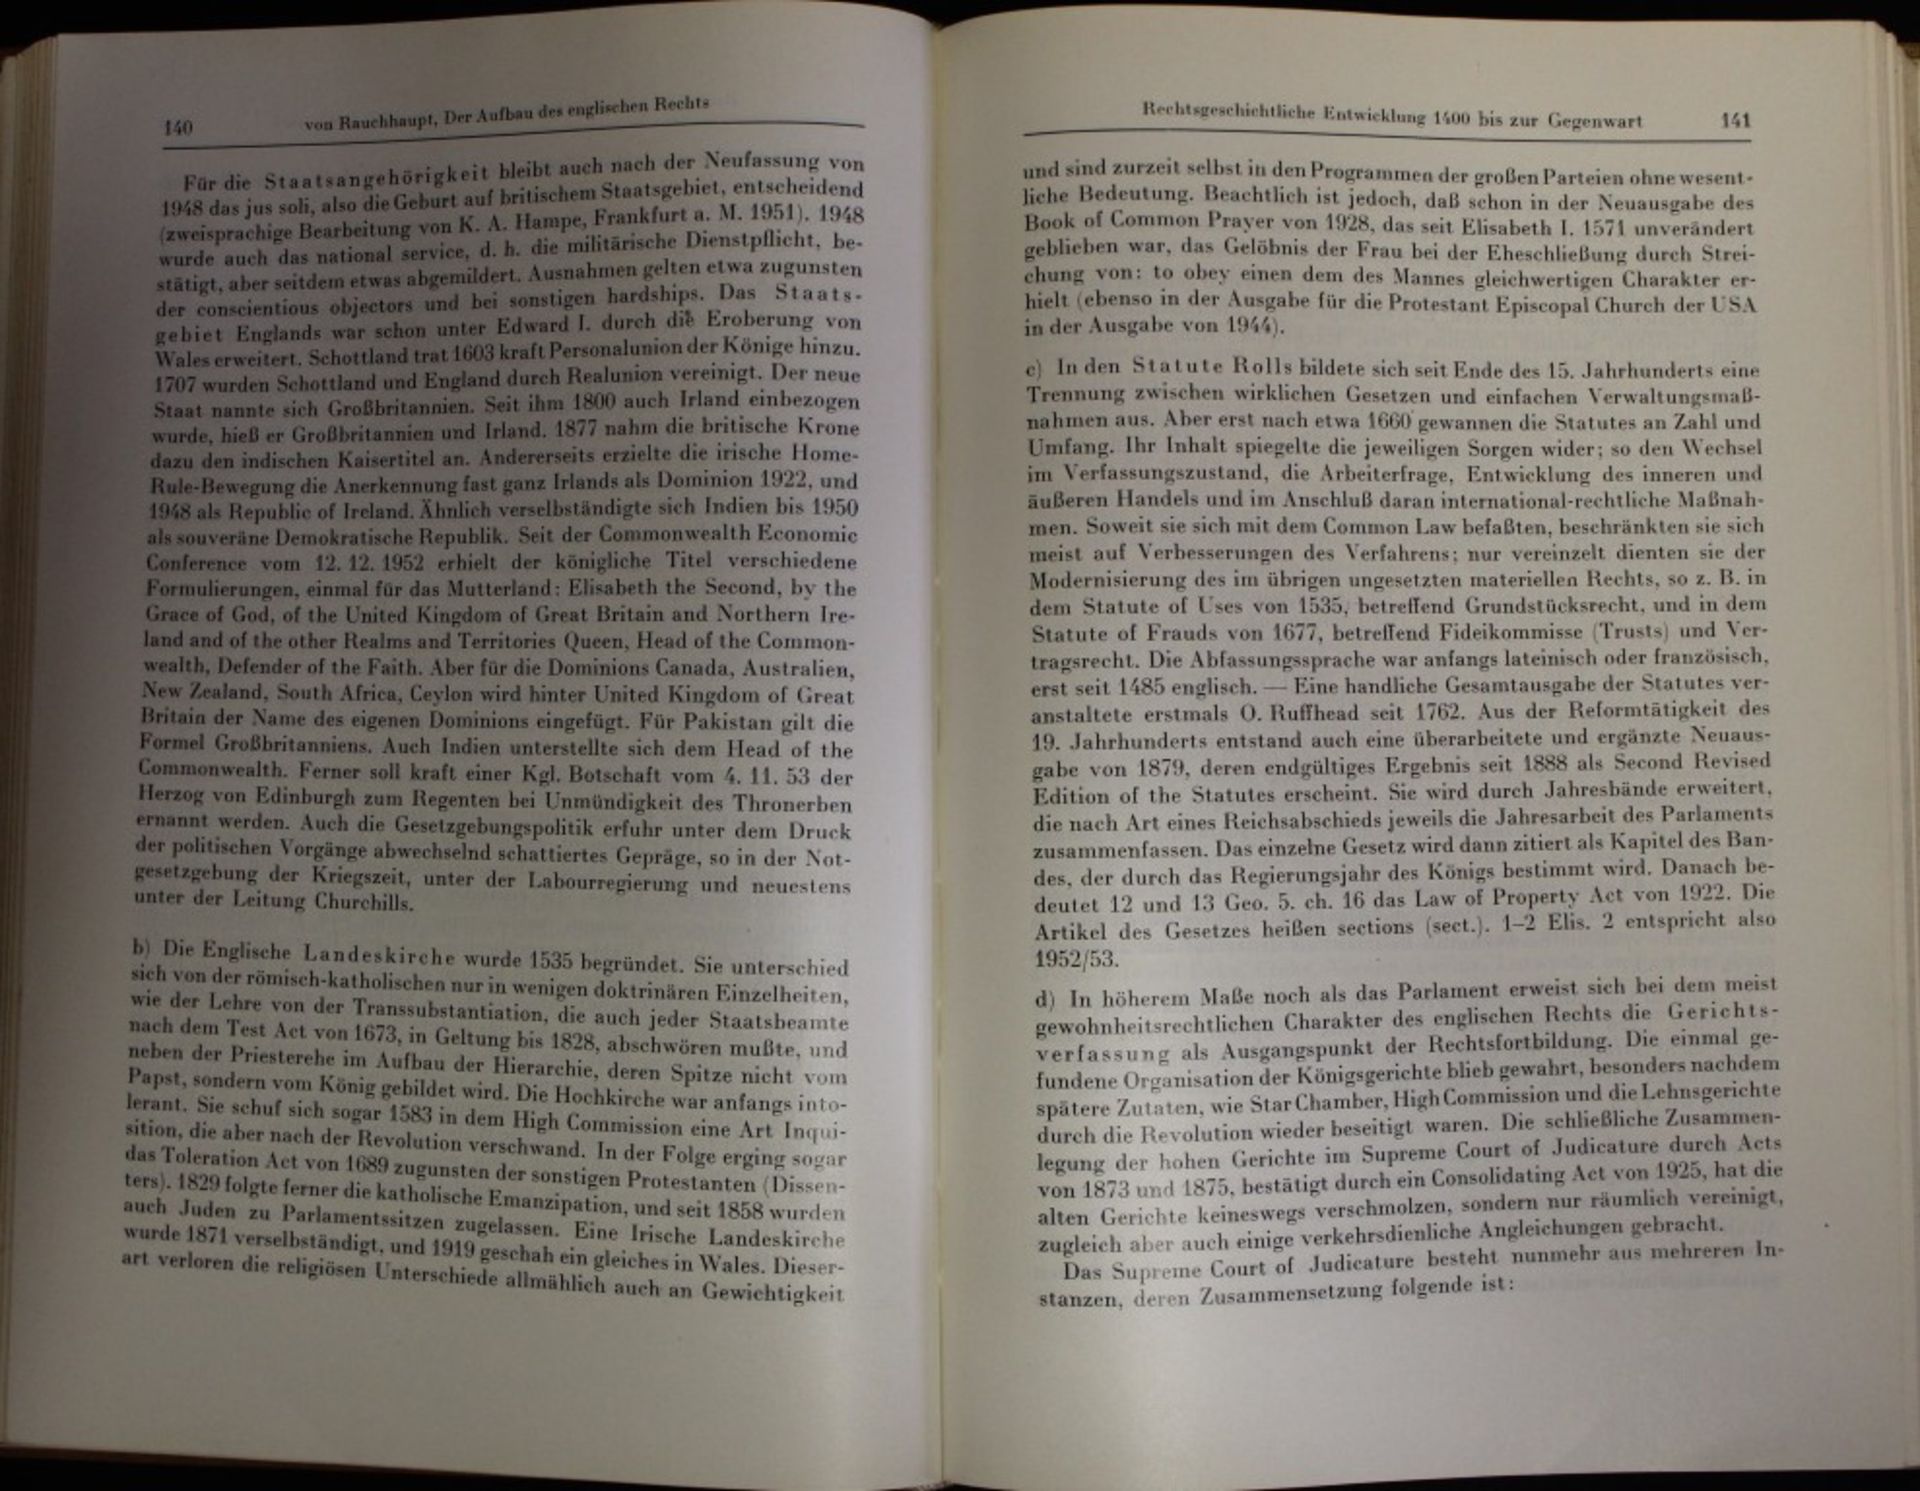 Englandkunde, Dritte Auflage, Herausgeg. Dr. Paul Hartig, 1955, Handbücher der Auslandskunde, - Image 3 of 3